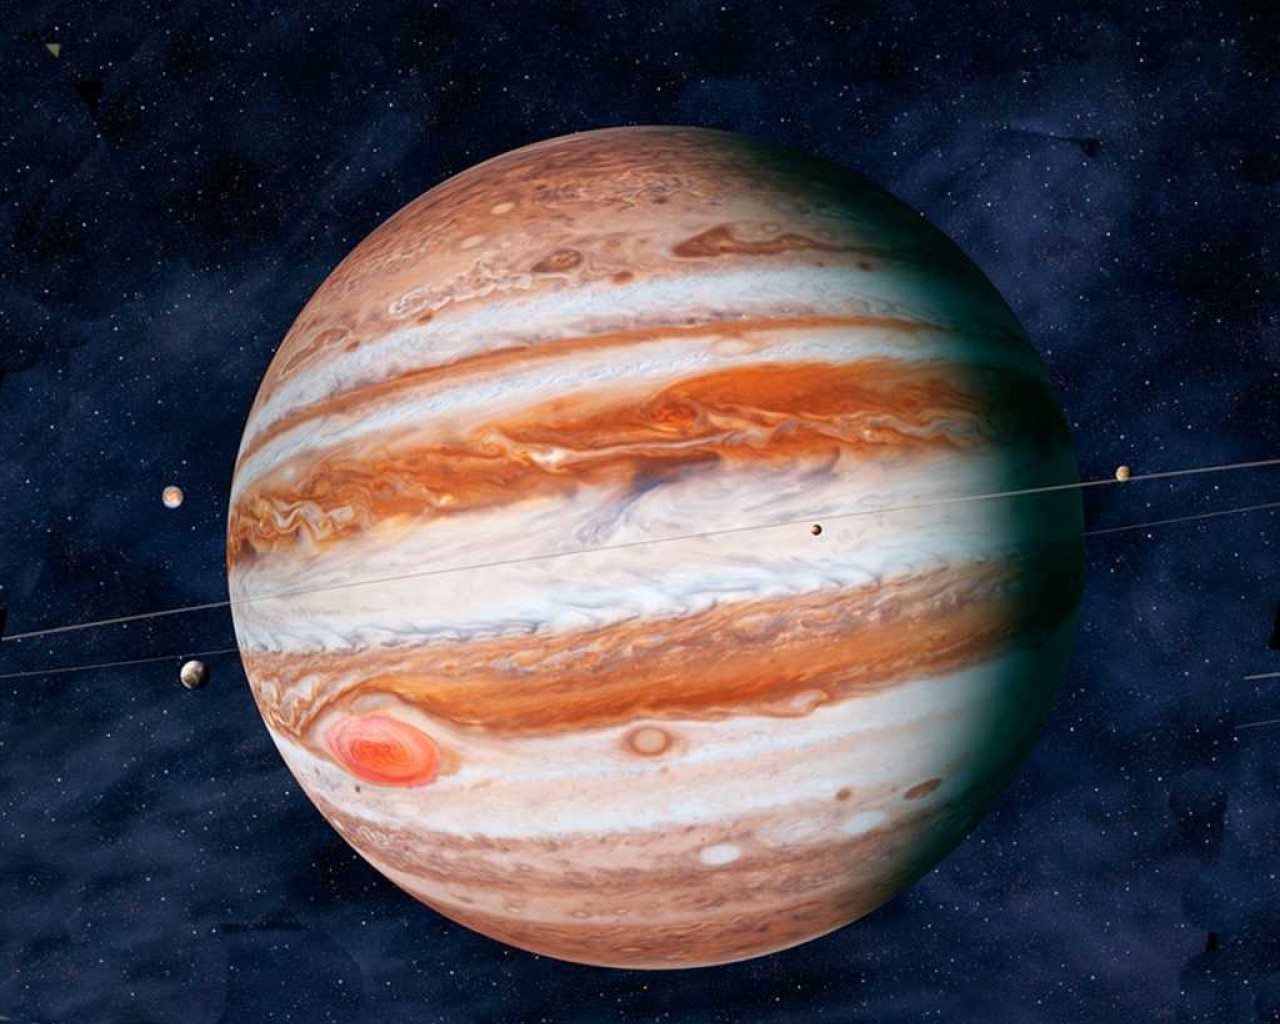 Удивительные открытия о планете Юпитер - научные факты, впечатляющая природа и удивительные обитатели